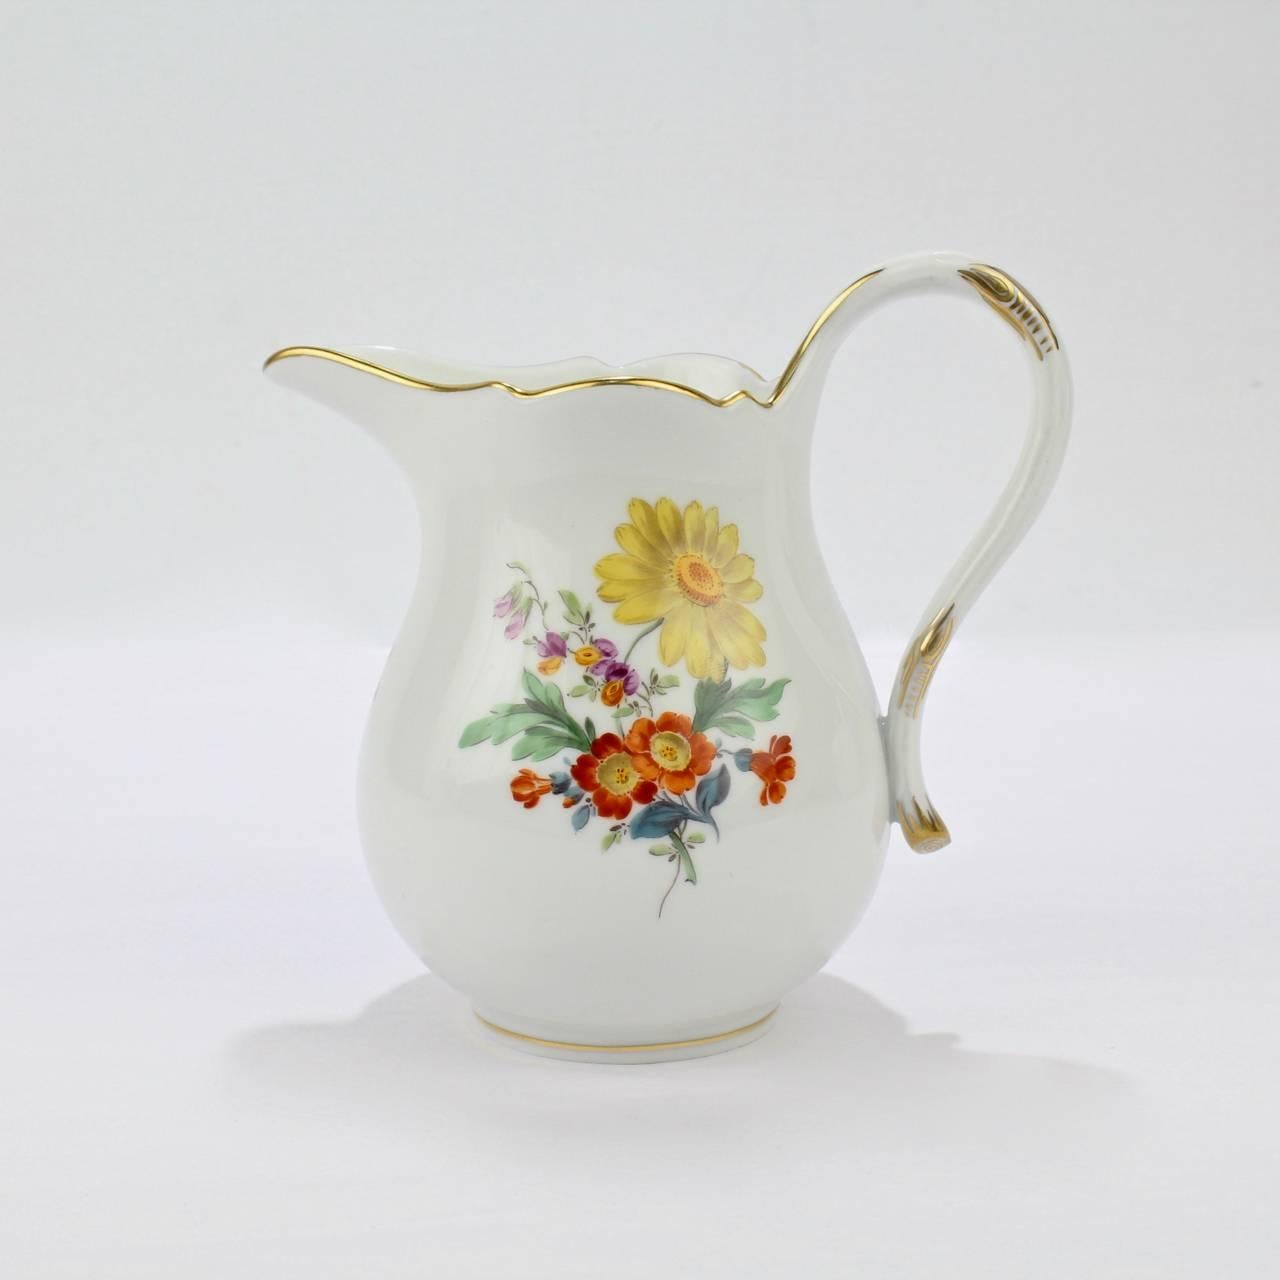 Hand-Painted Meissen Porcelain Tea Set with 'Deutsche Blumen' Flower Decoration, 20th Century